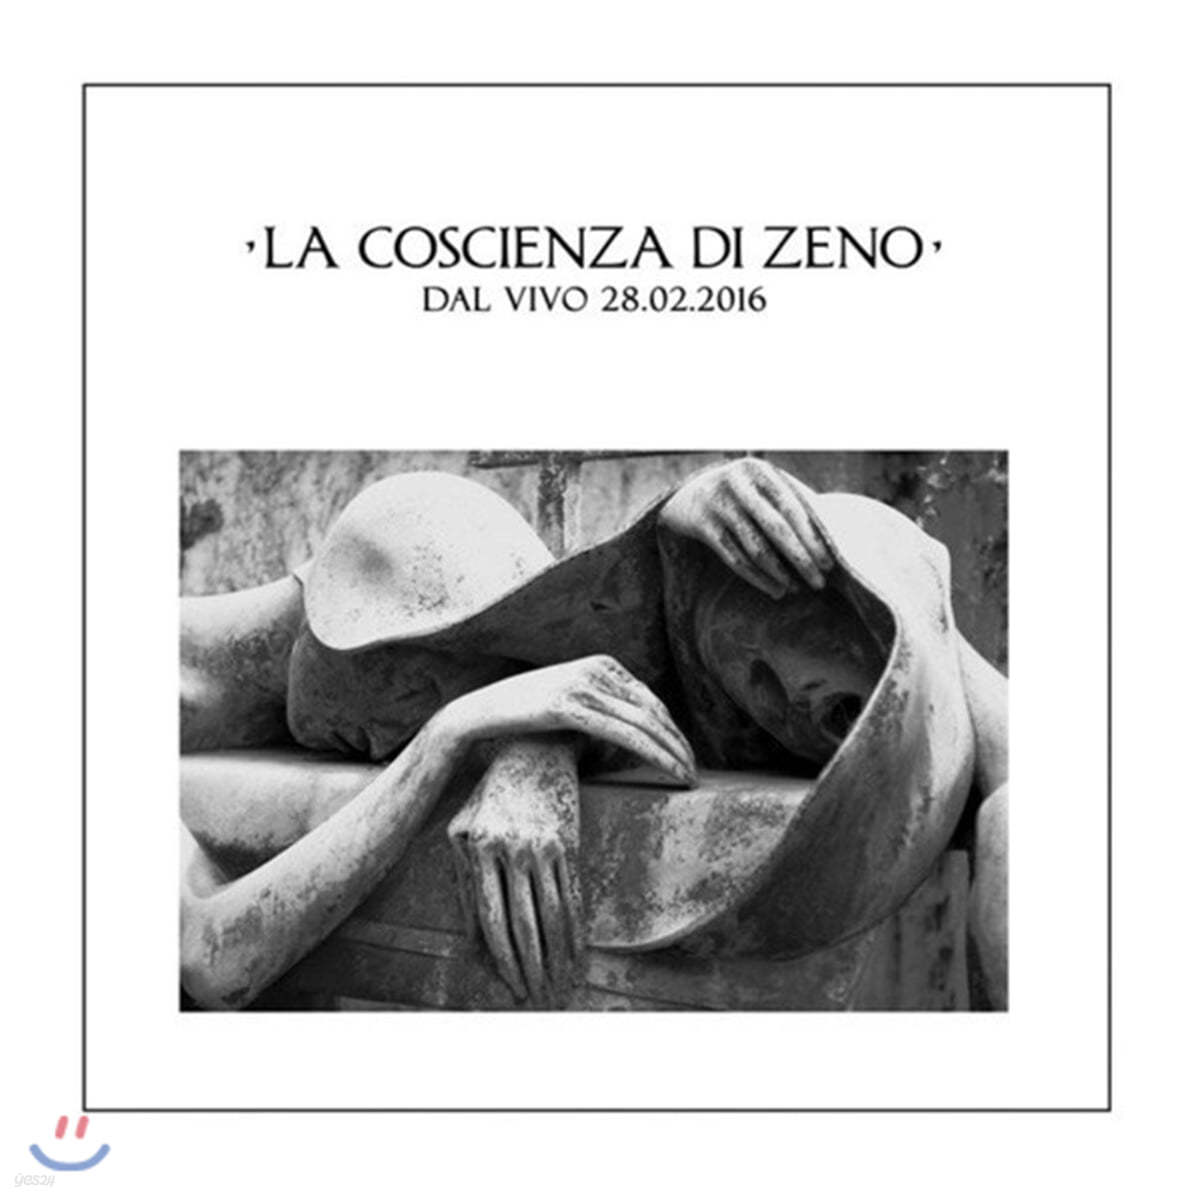 La Coscienza di Zeno (라 코스시엔자 디 제노) - Il Giro del Cappio - Dal Vivo 28.02.2016 